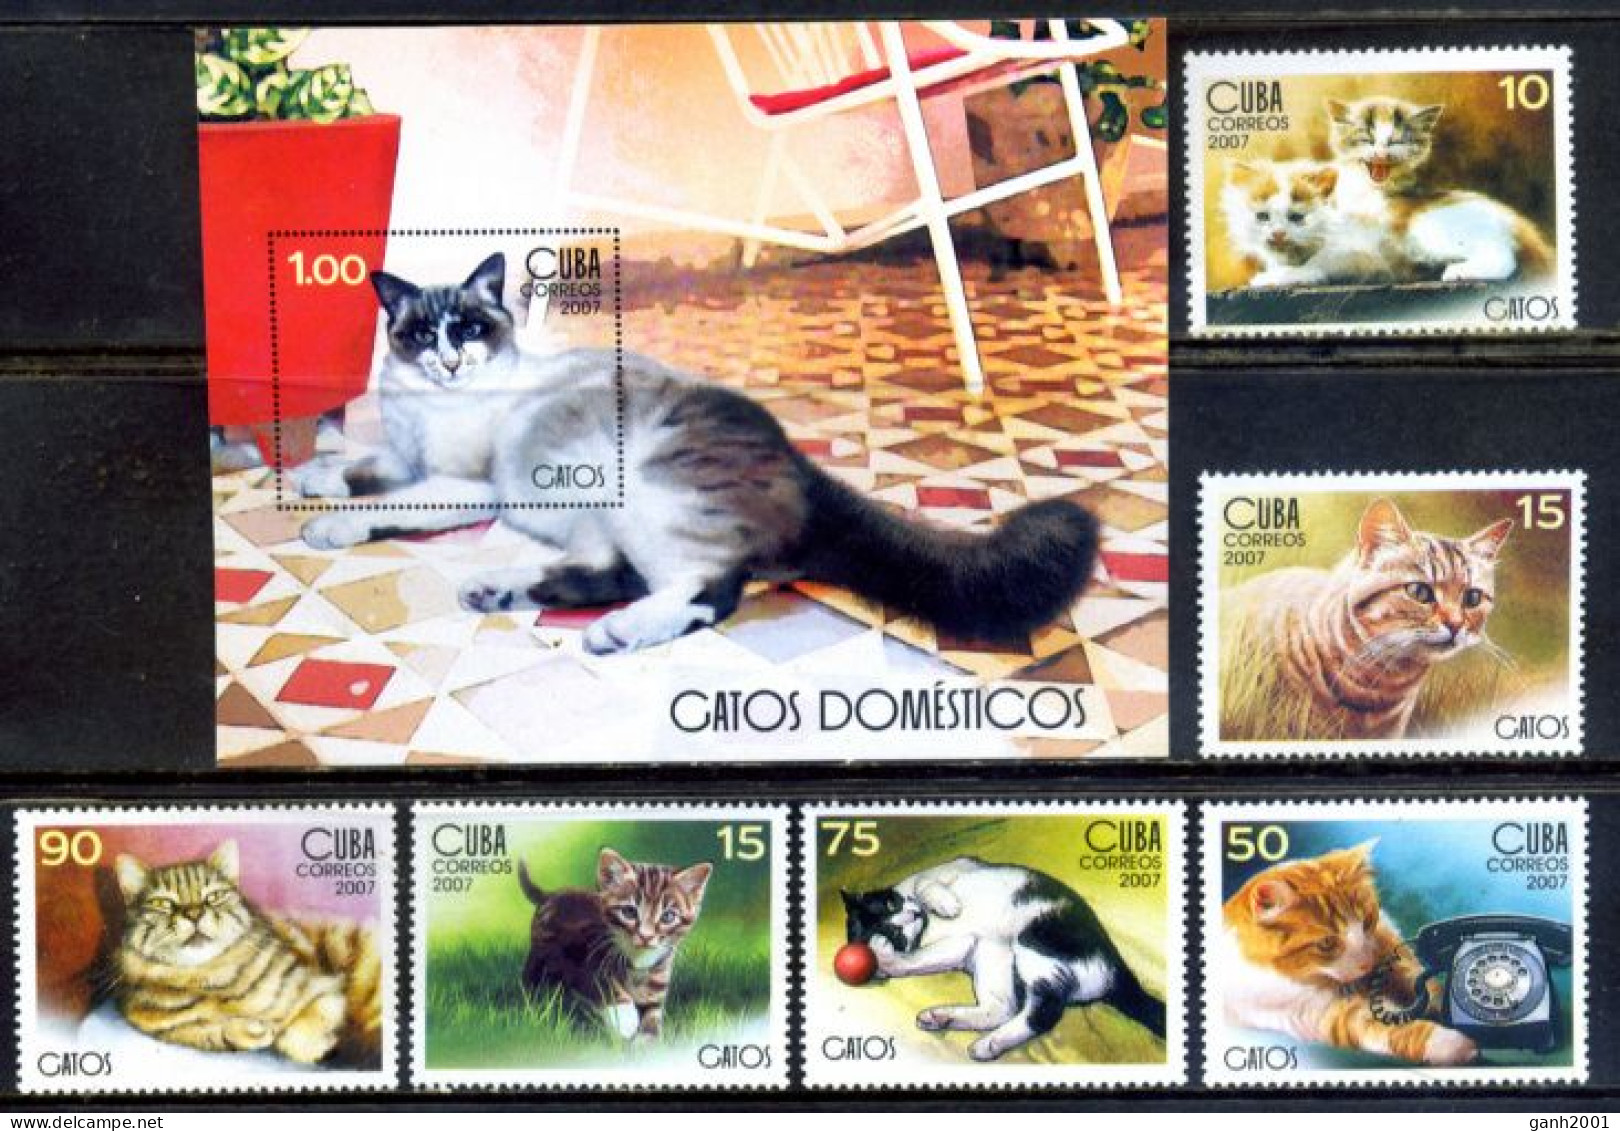 Cuba 2007 / Cats MNH Gatos Katzen Chats / Cu6001 29-21 - Chats Domestiques